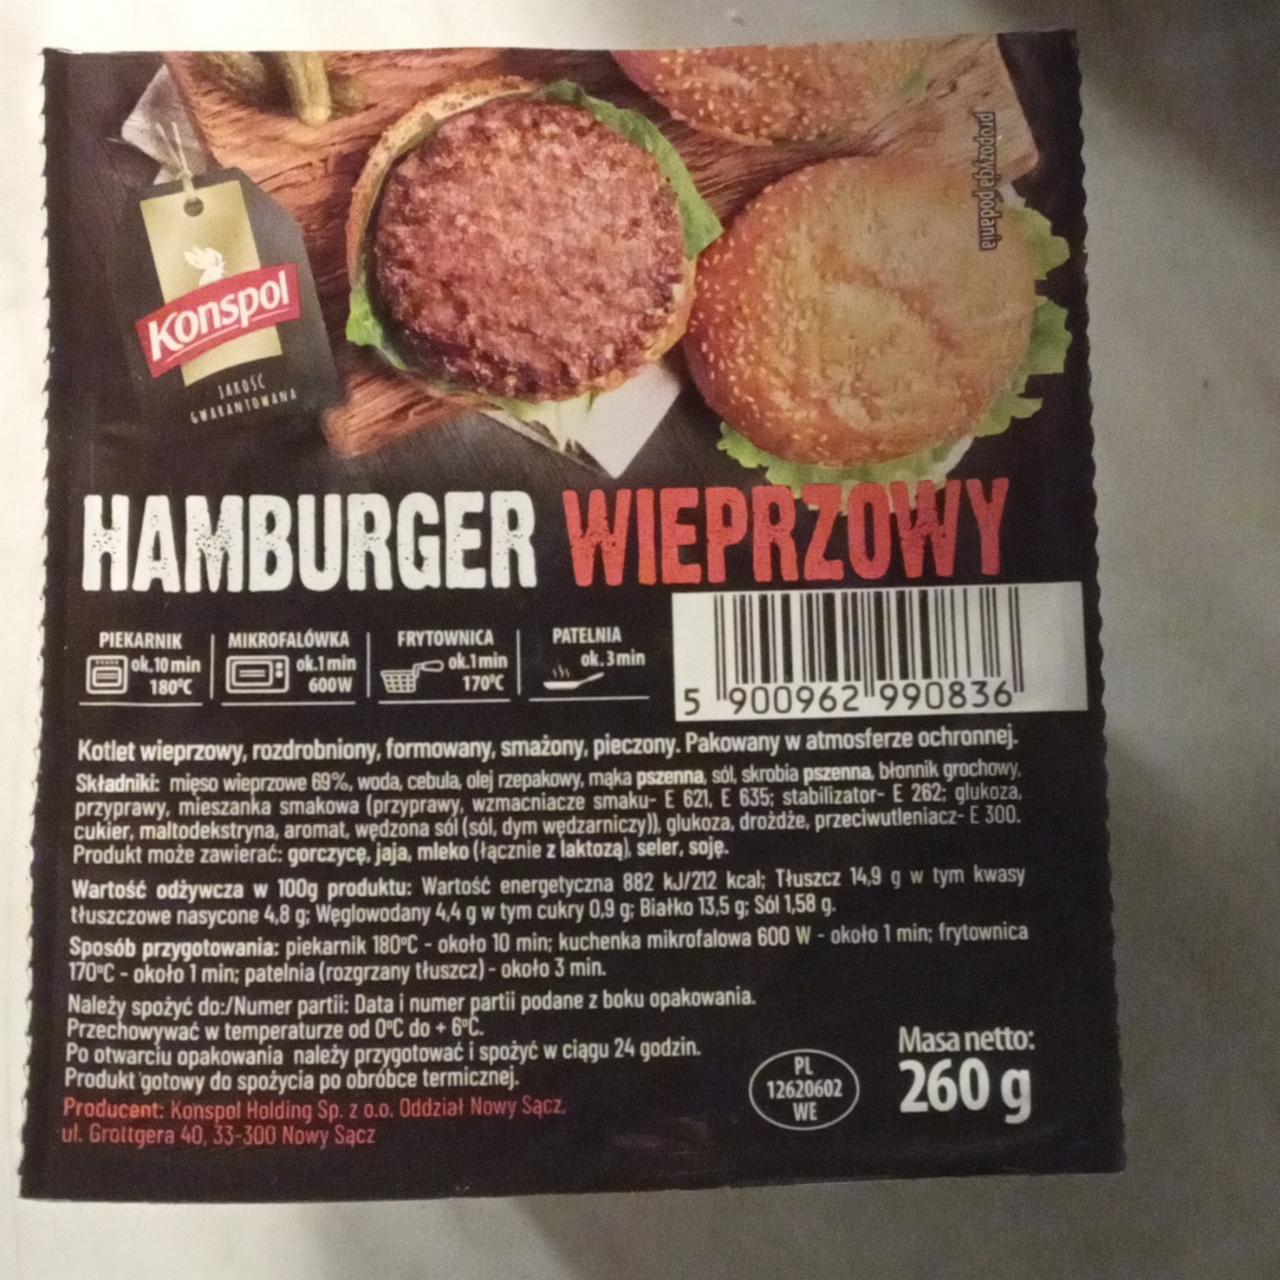 Zdjęcia - hamburger wieprzowy Konspol